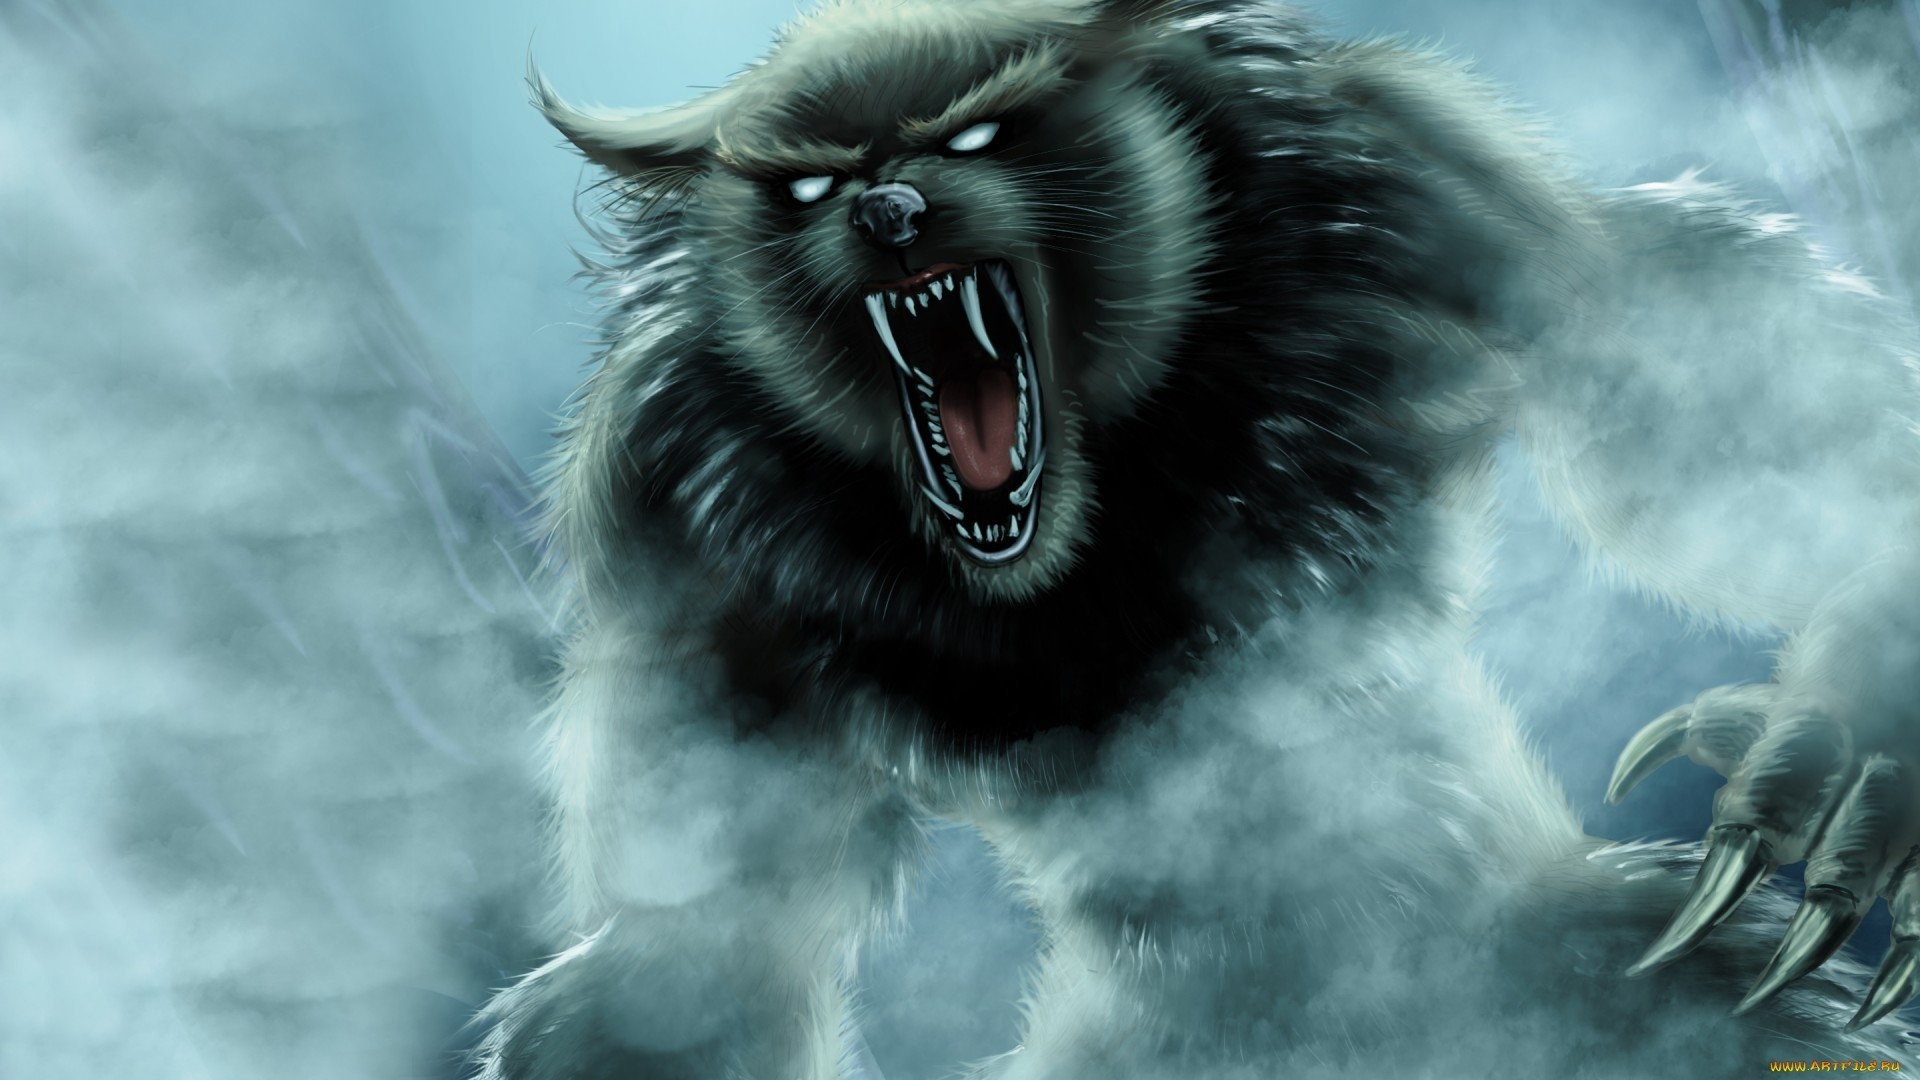 X Werewolf Wallpapers HD Wallpapers Pinterest Werewolves, Underworld werewolf and Wallpaper